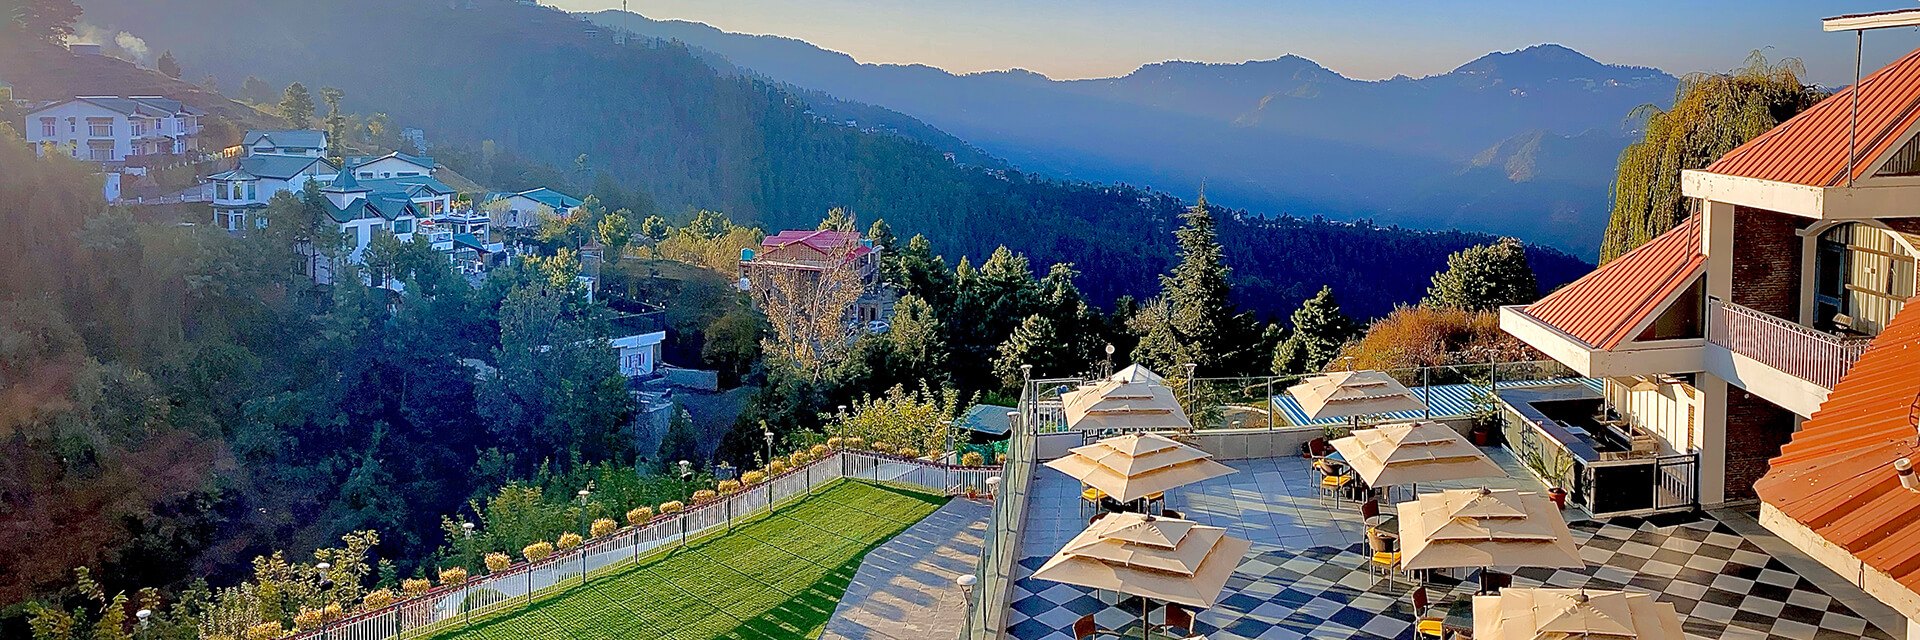 resorts in shimla